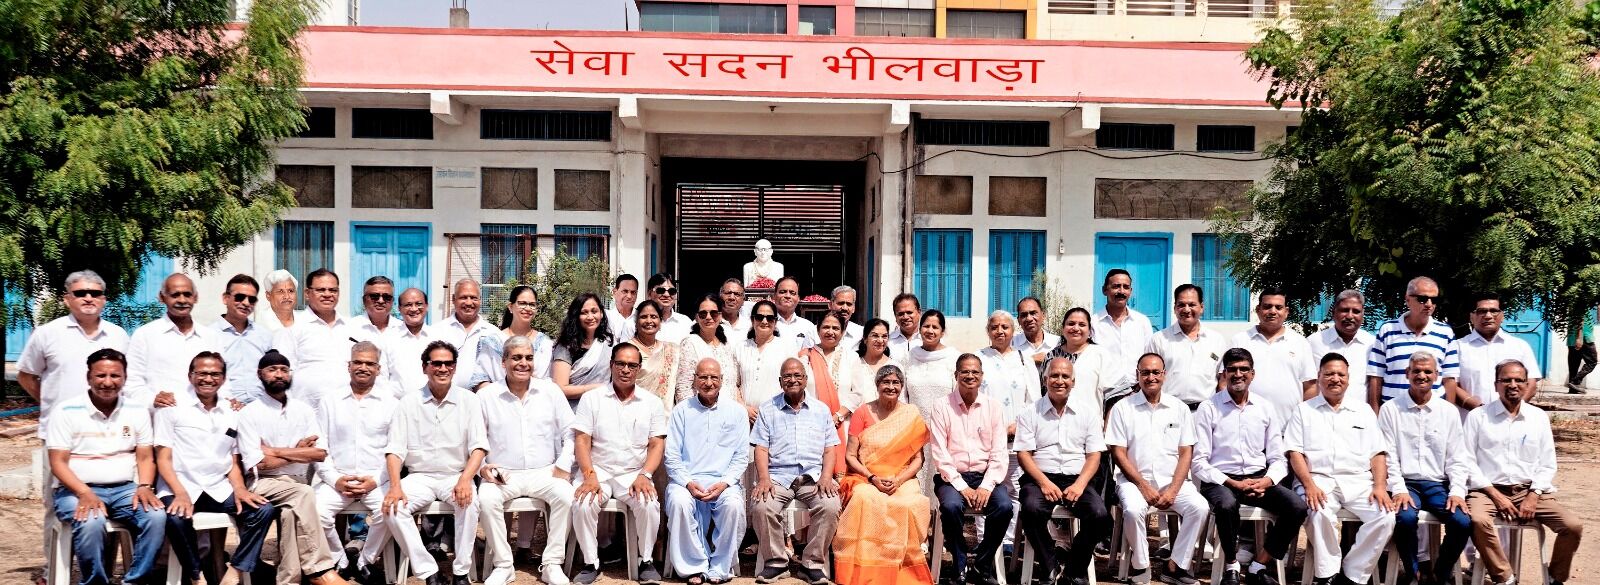 Seva Sadan School के पूर्व विधार्थियों द्वारा स्नेह मिलन समारोह आयोजित, सेवा सदन व ग्राम भारती पर किया पौधारोपण